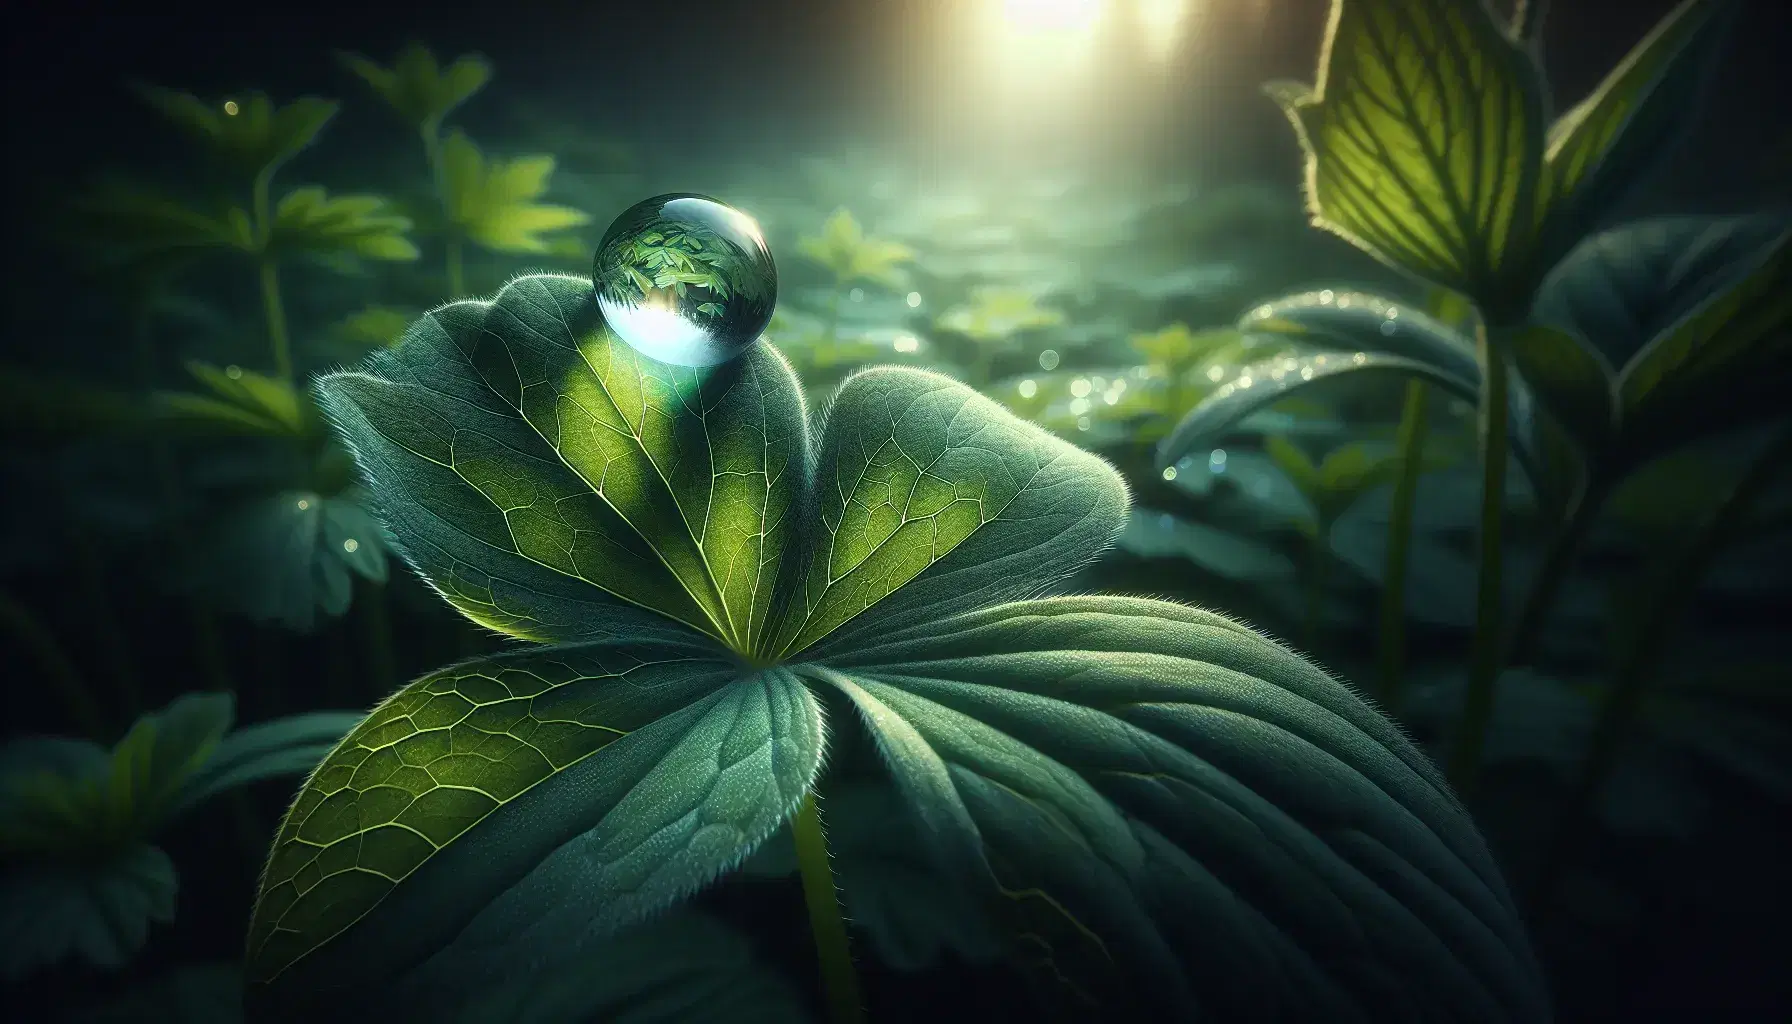 Gota de agua resplandeciente en la punta de una hoja verde con textura veteada, rodeada de vegetación desenfocada en un entorno natural.